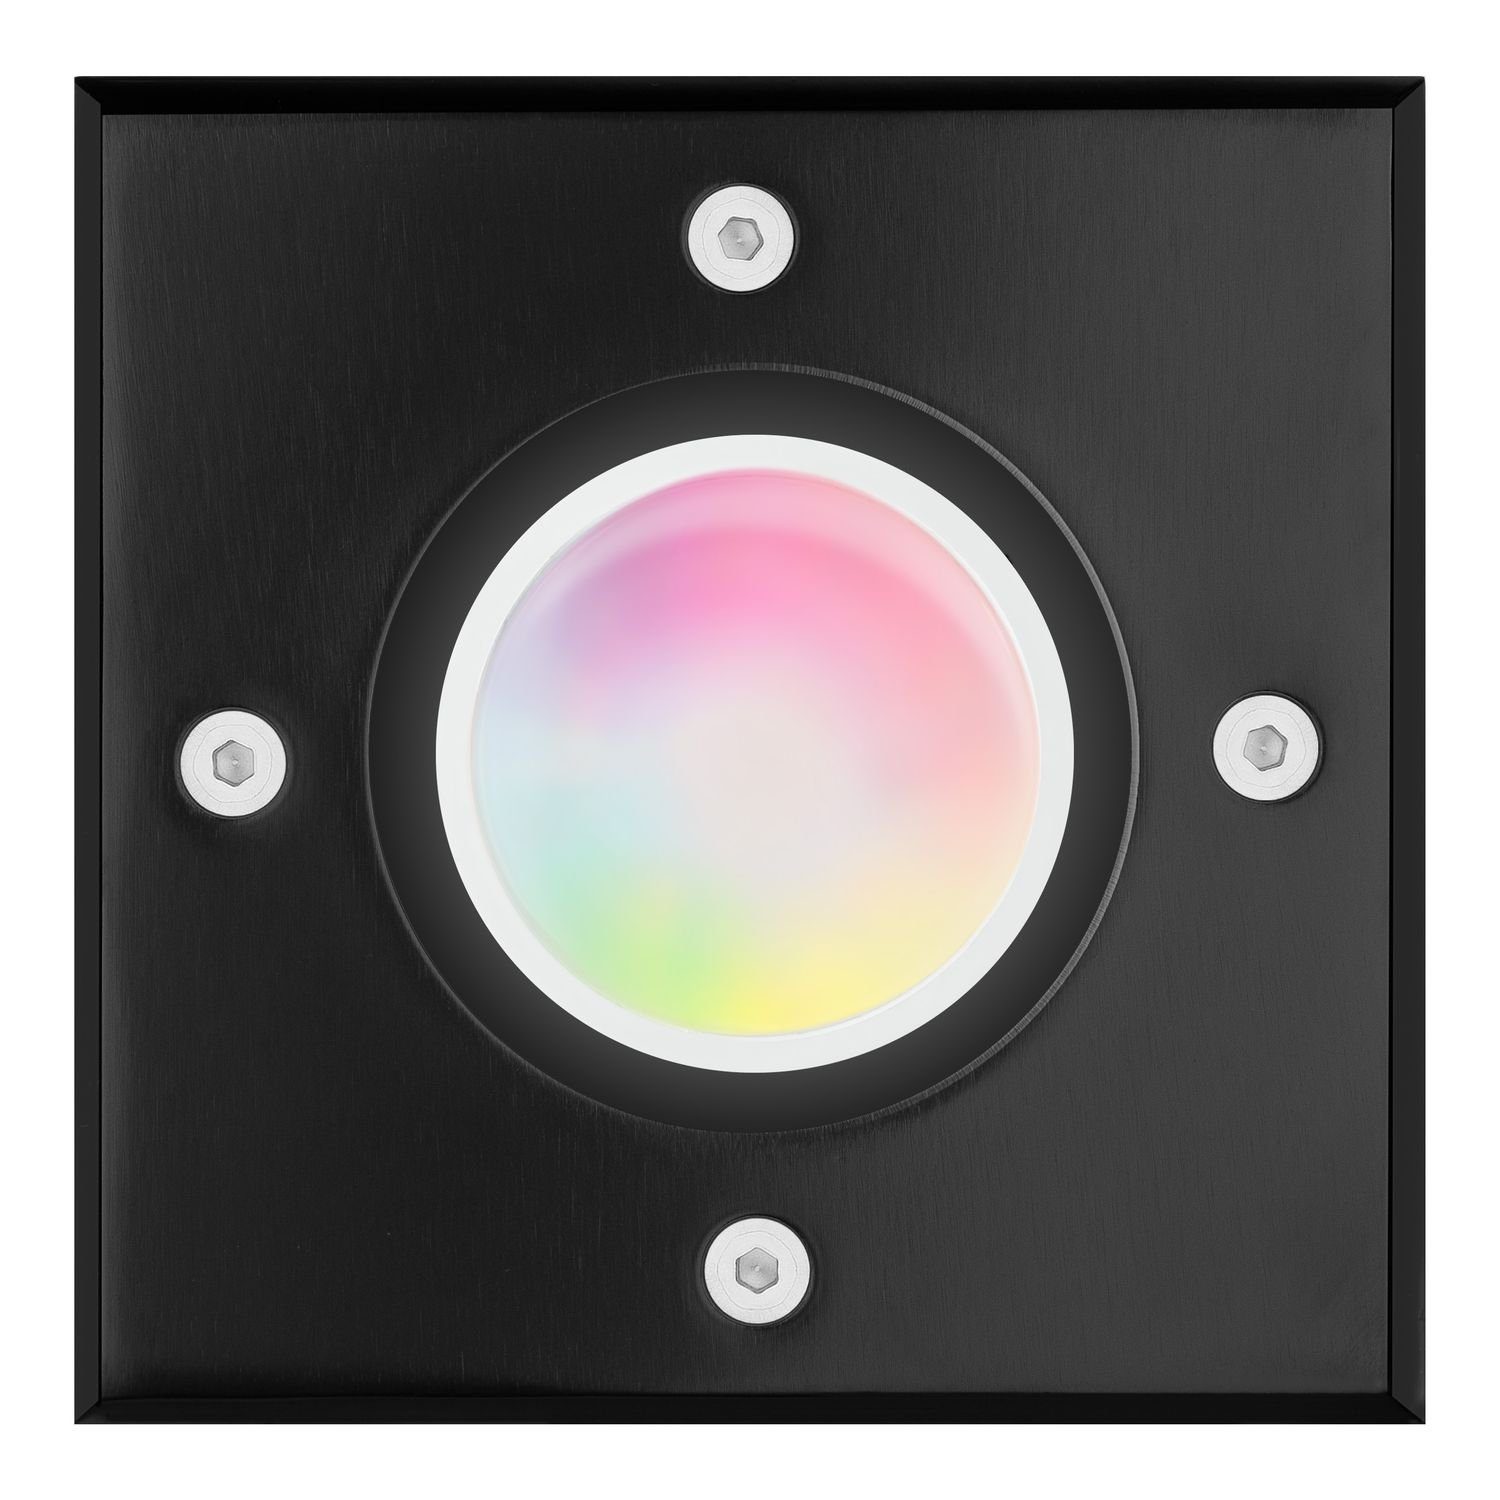 Set Smart LED per App - 5W - LED steuerbar + Bodeneinbaustrahler RGB WiFi Einbaustrahler LEDANDO